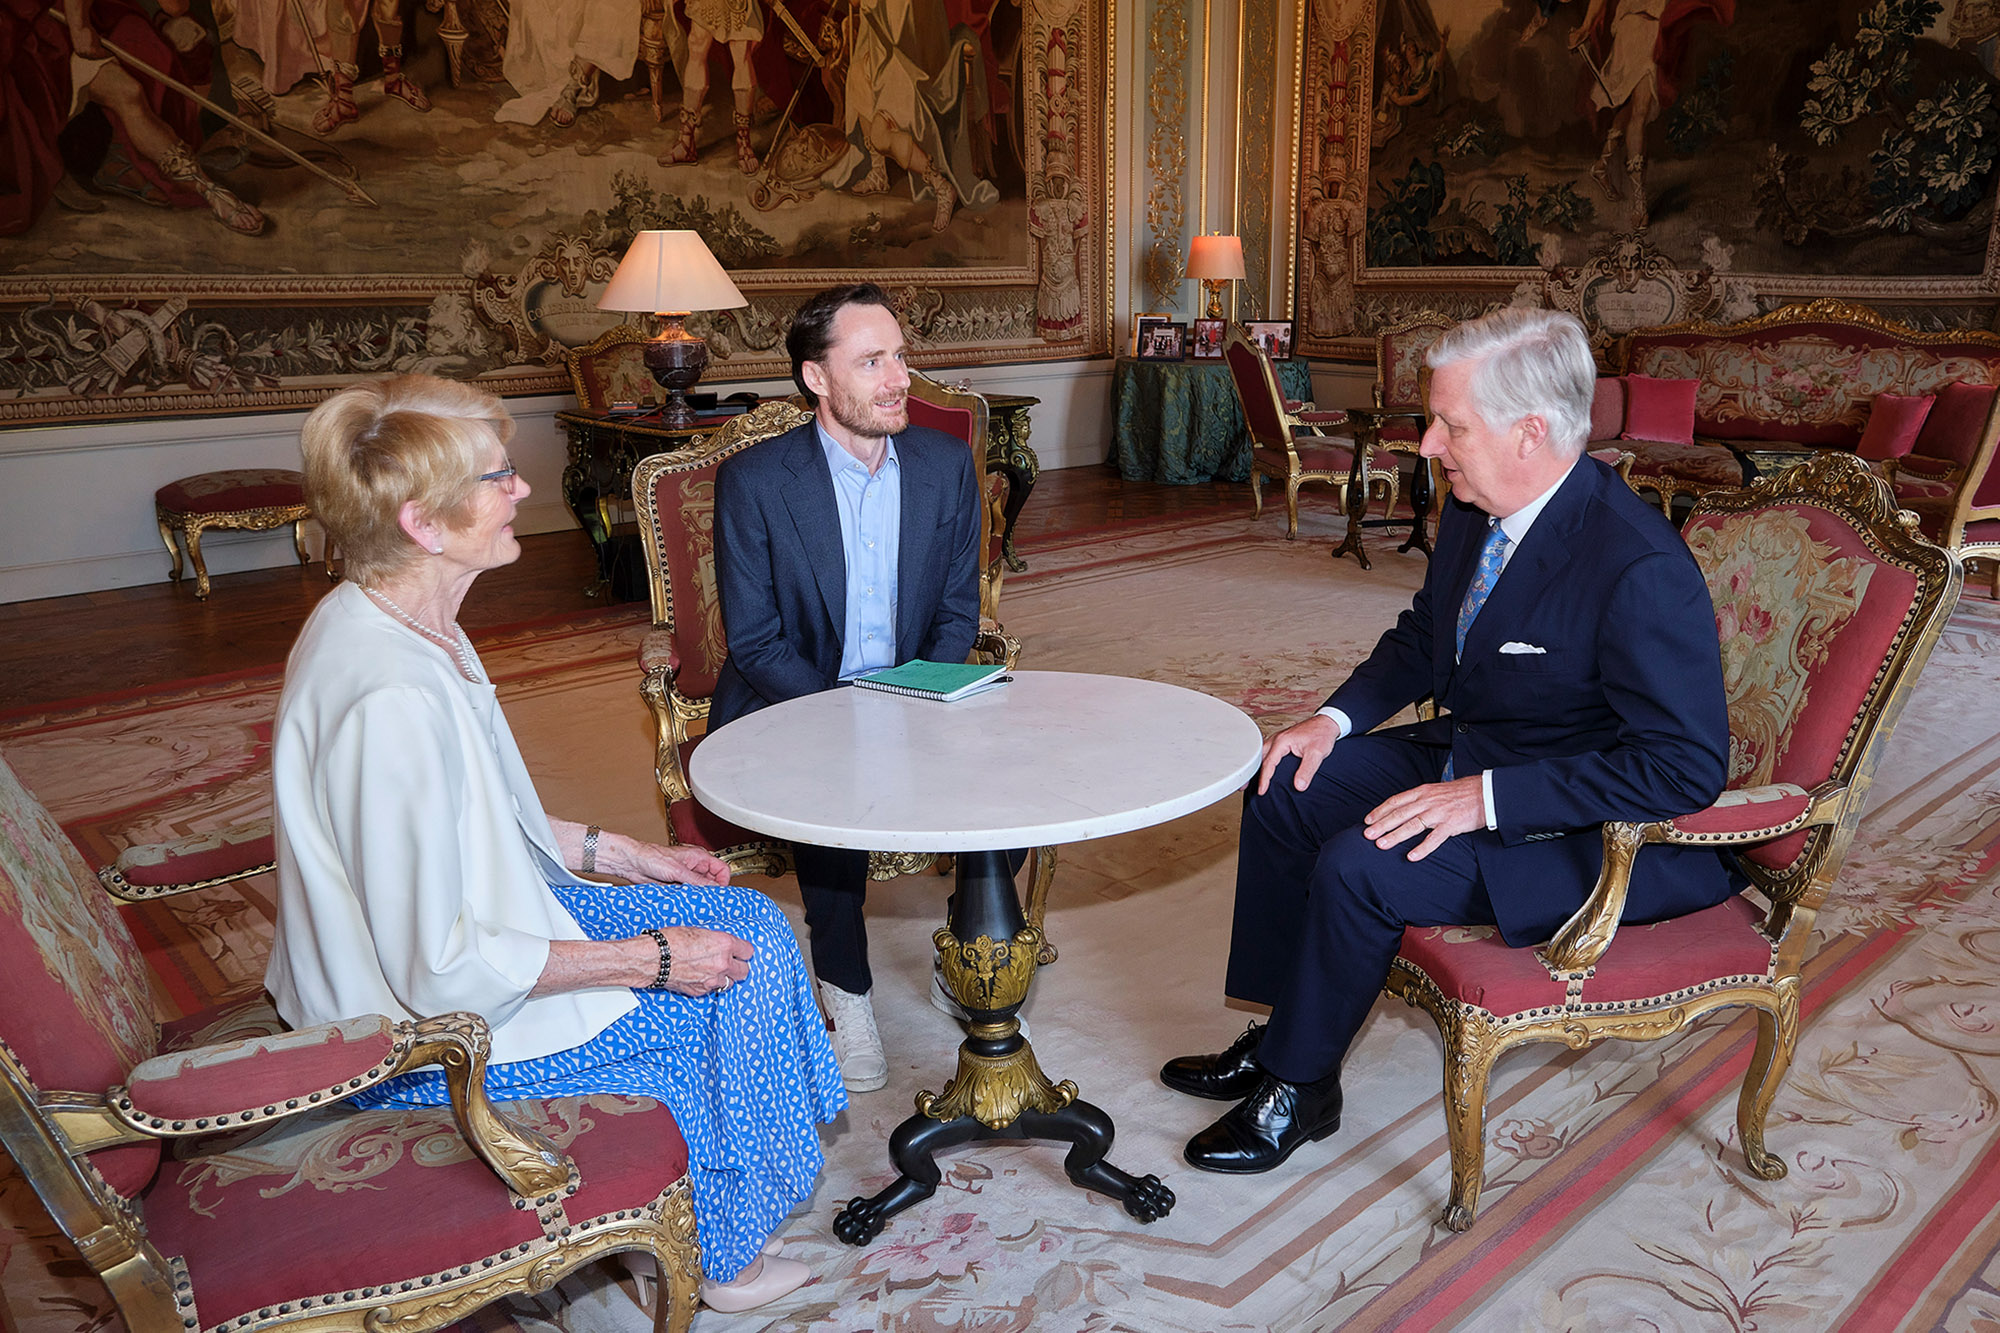 König empfängt Olivier Vandecasteele und dessen Mutter im Palast (Bild: Olivier Polet/Belga)